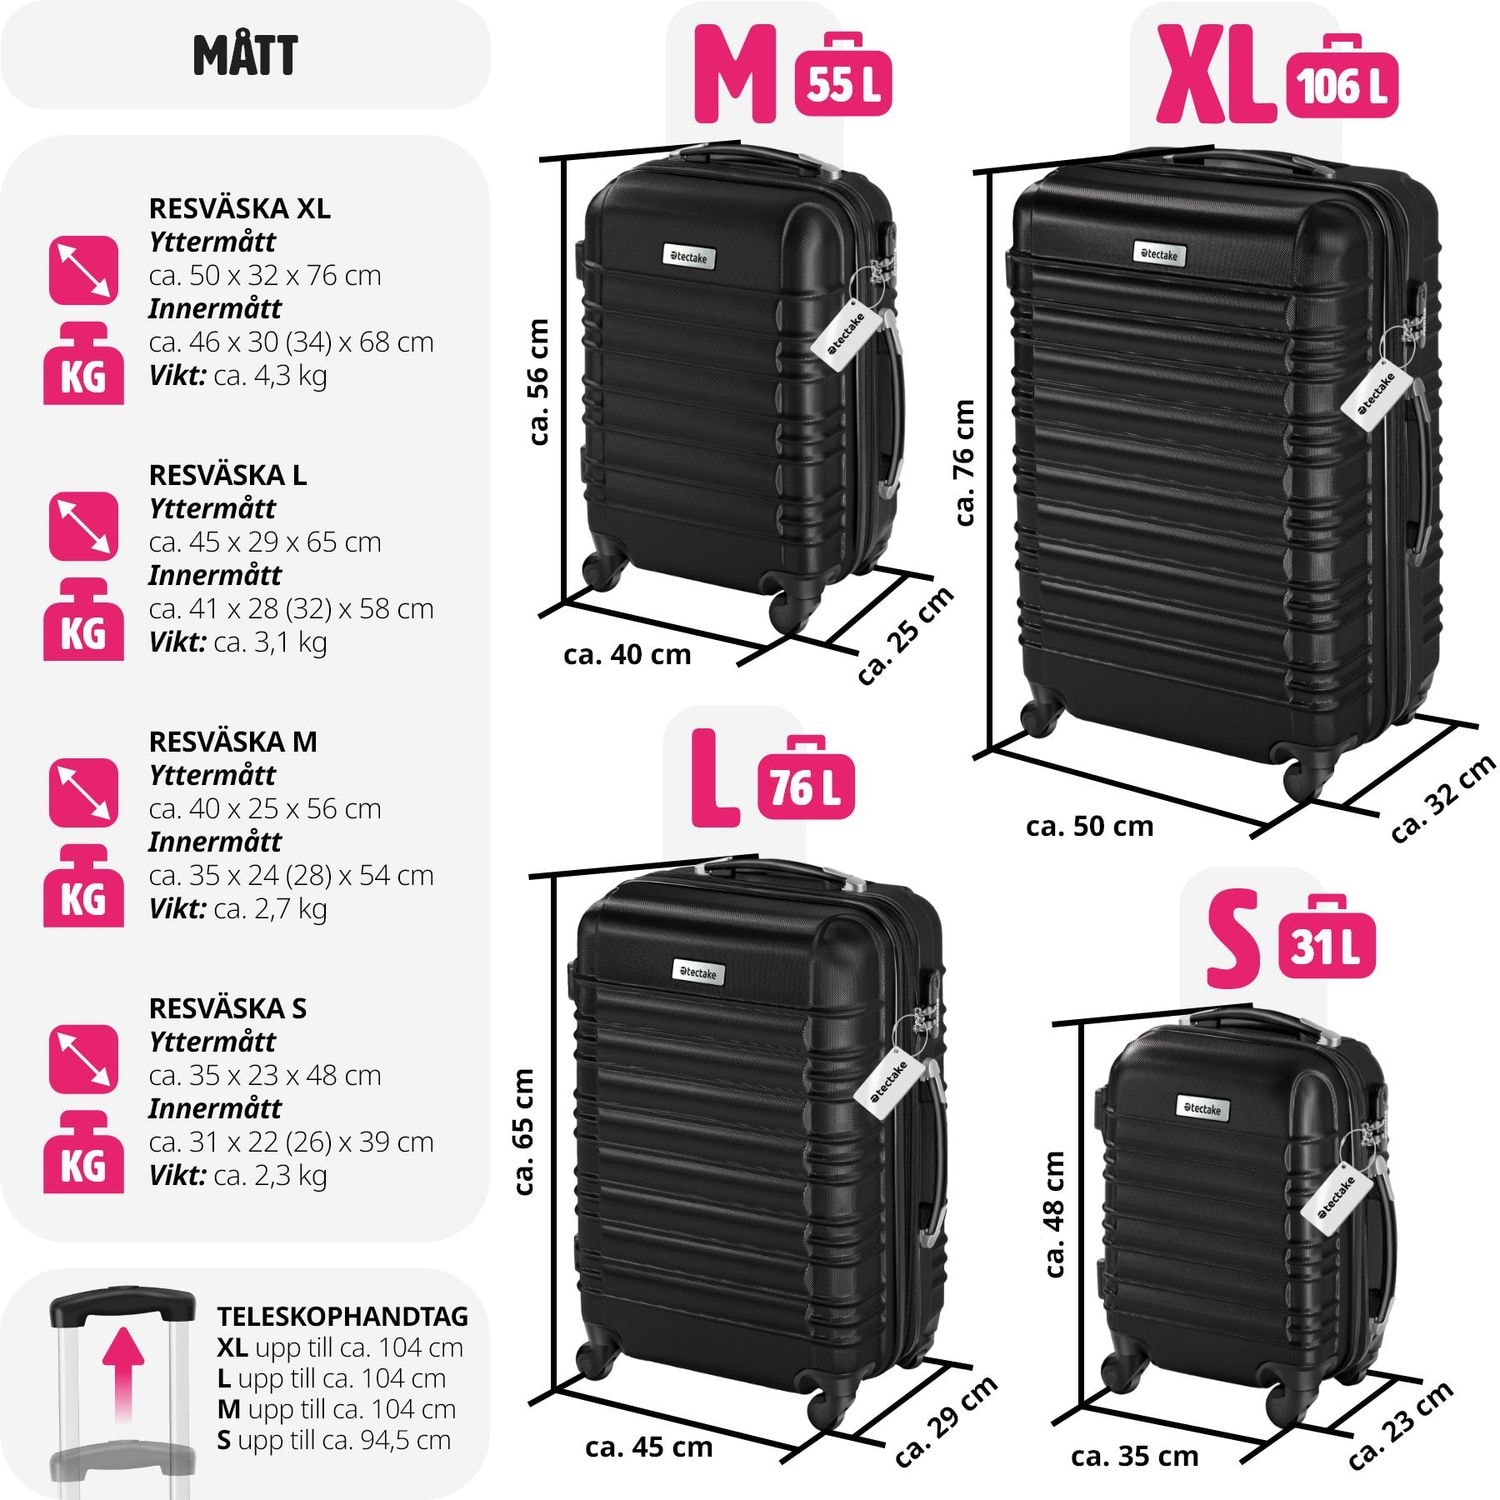 Resväskeset Mila - 4 resväskor, bagage med bagagevåg och namntaggar - svart (5 av 12)